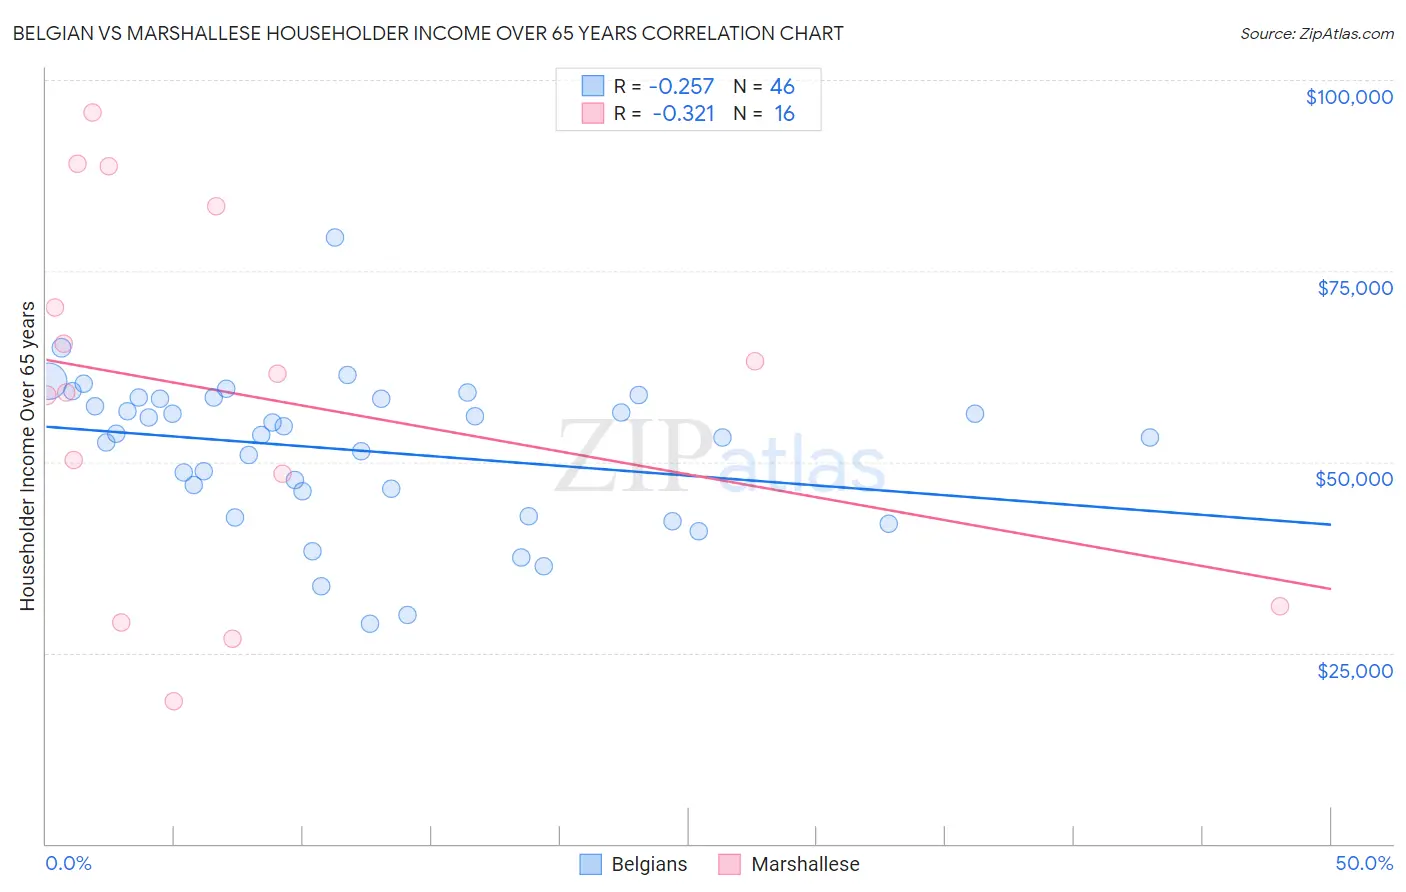 Belgian vs Marshallese Householder Income Over 65 years